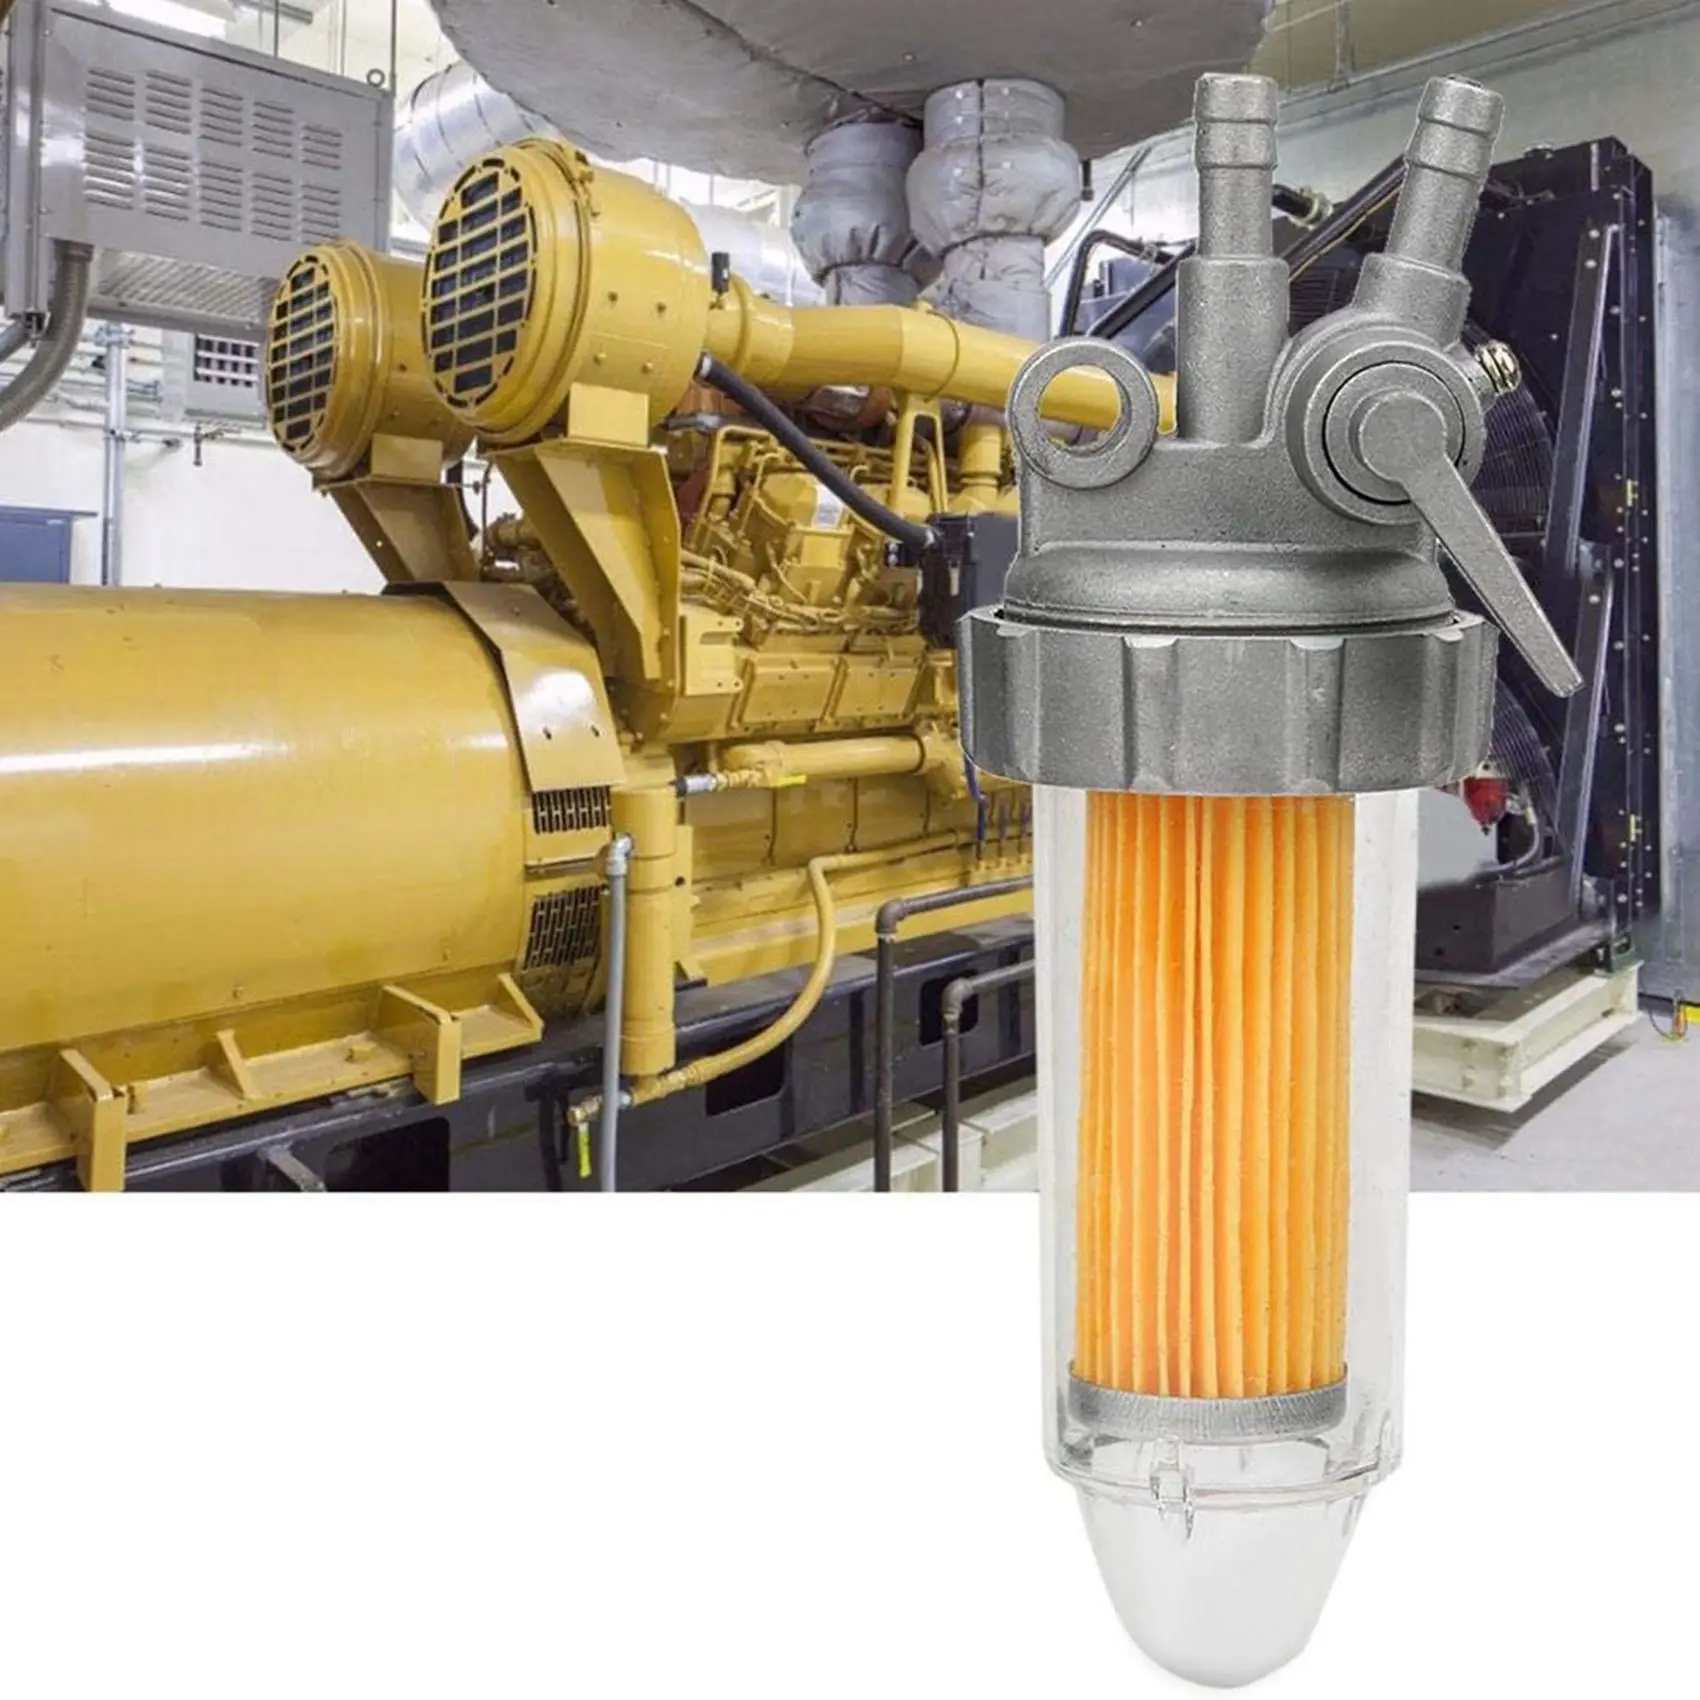 Автомобильное масло Топливный фильтр Запорный клапан Генератор Запчасти для автомобильных фильтров Аксессуары для 5 кВт 6 КВТ 7 кВт 178F 186F 188F . ' - ' . 1